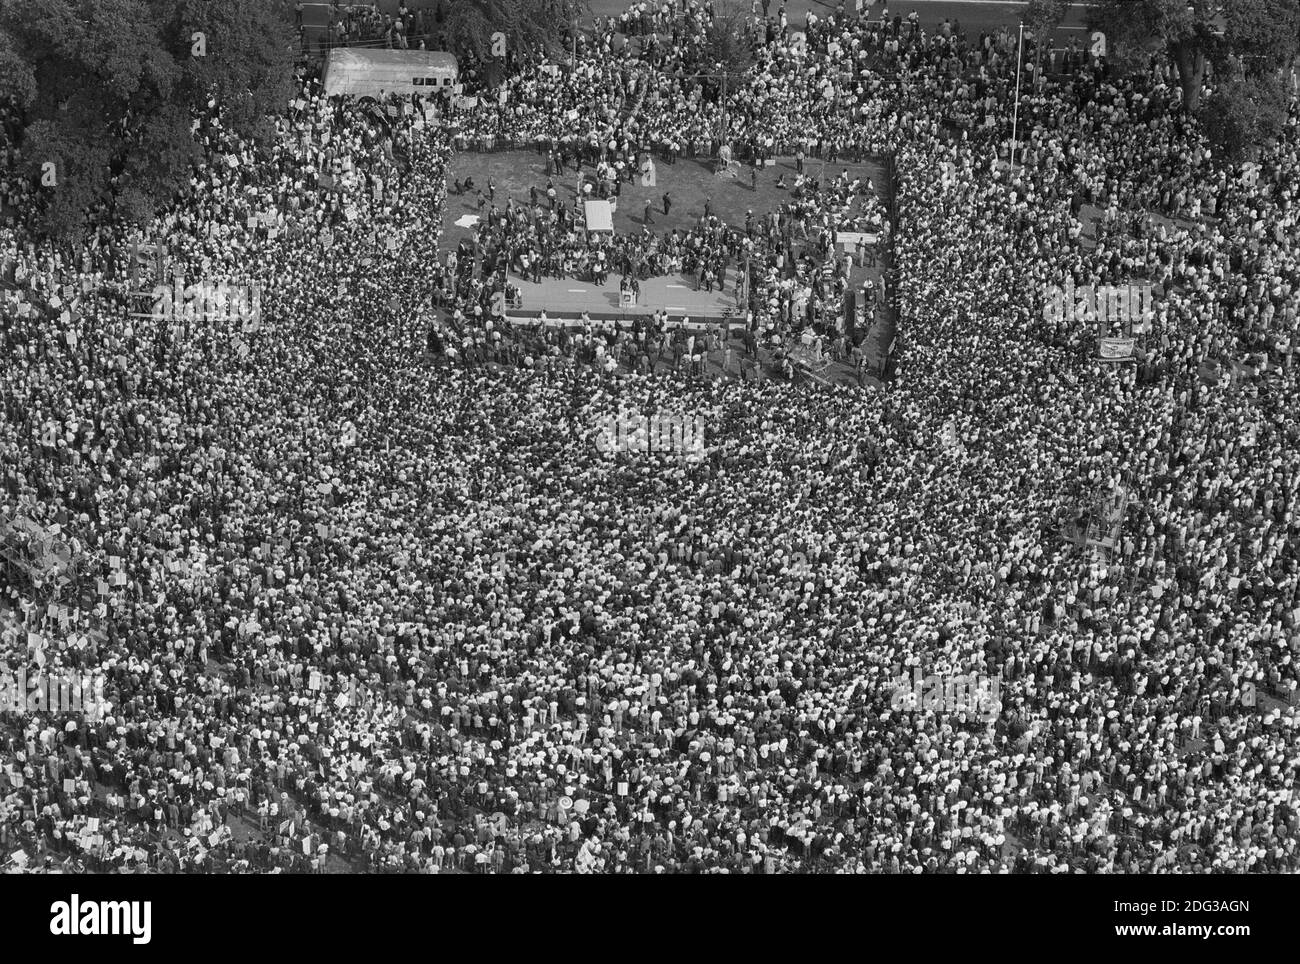 Vue en grand angle de la foule de manifestants à March on Washington for Jobs and Freedom, Washington, D.C., USA, photo de Marion S. Trikosko, 28 août 1963 Banque D'Images